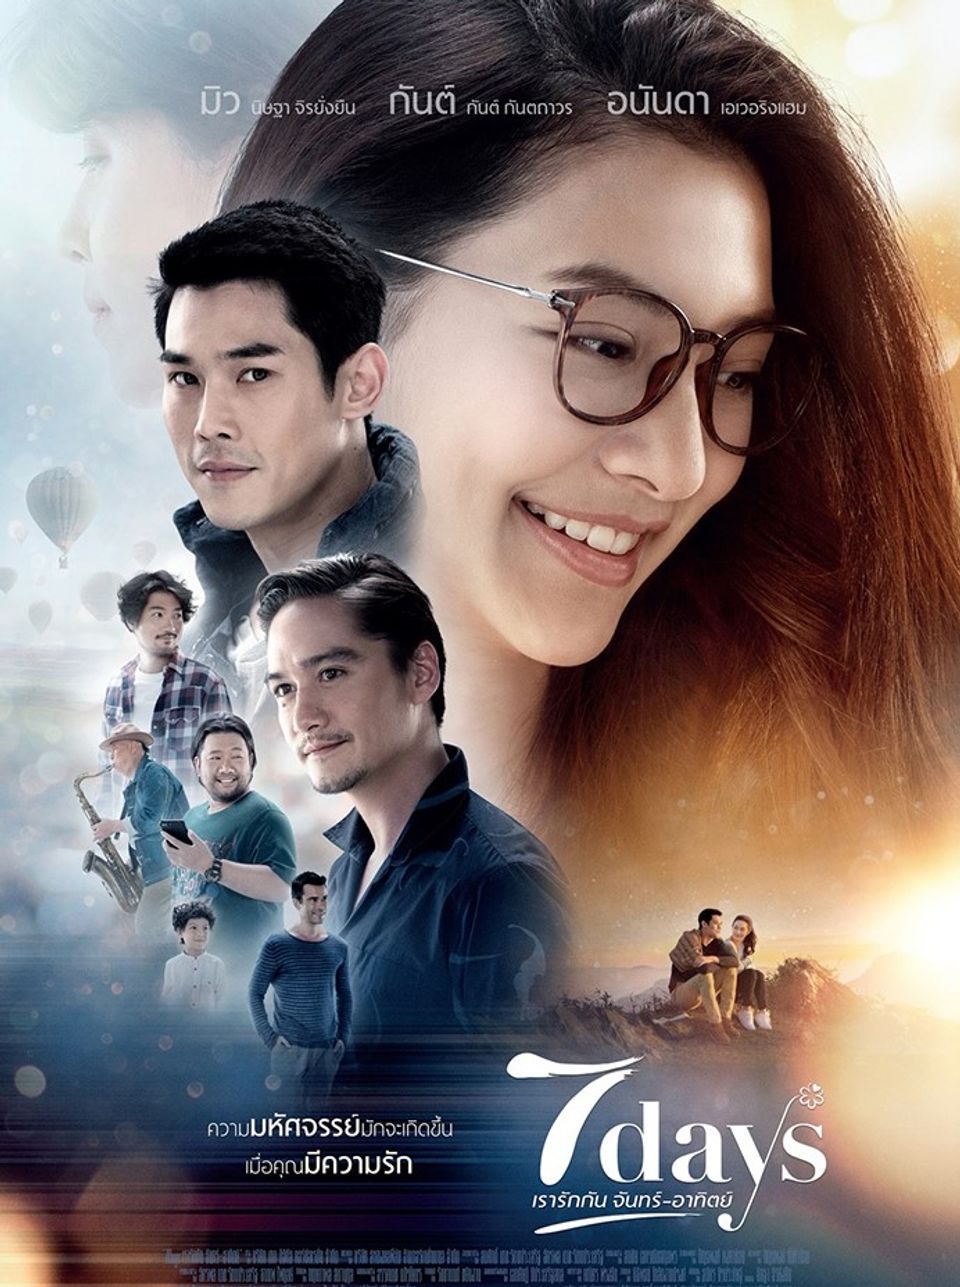 ภาพยนต์ไทย “7 DAYS เรารักกัน จันทร์-อาทิตย์” (7 DAYS)